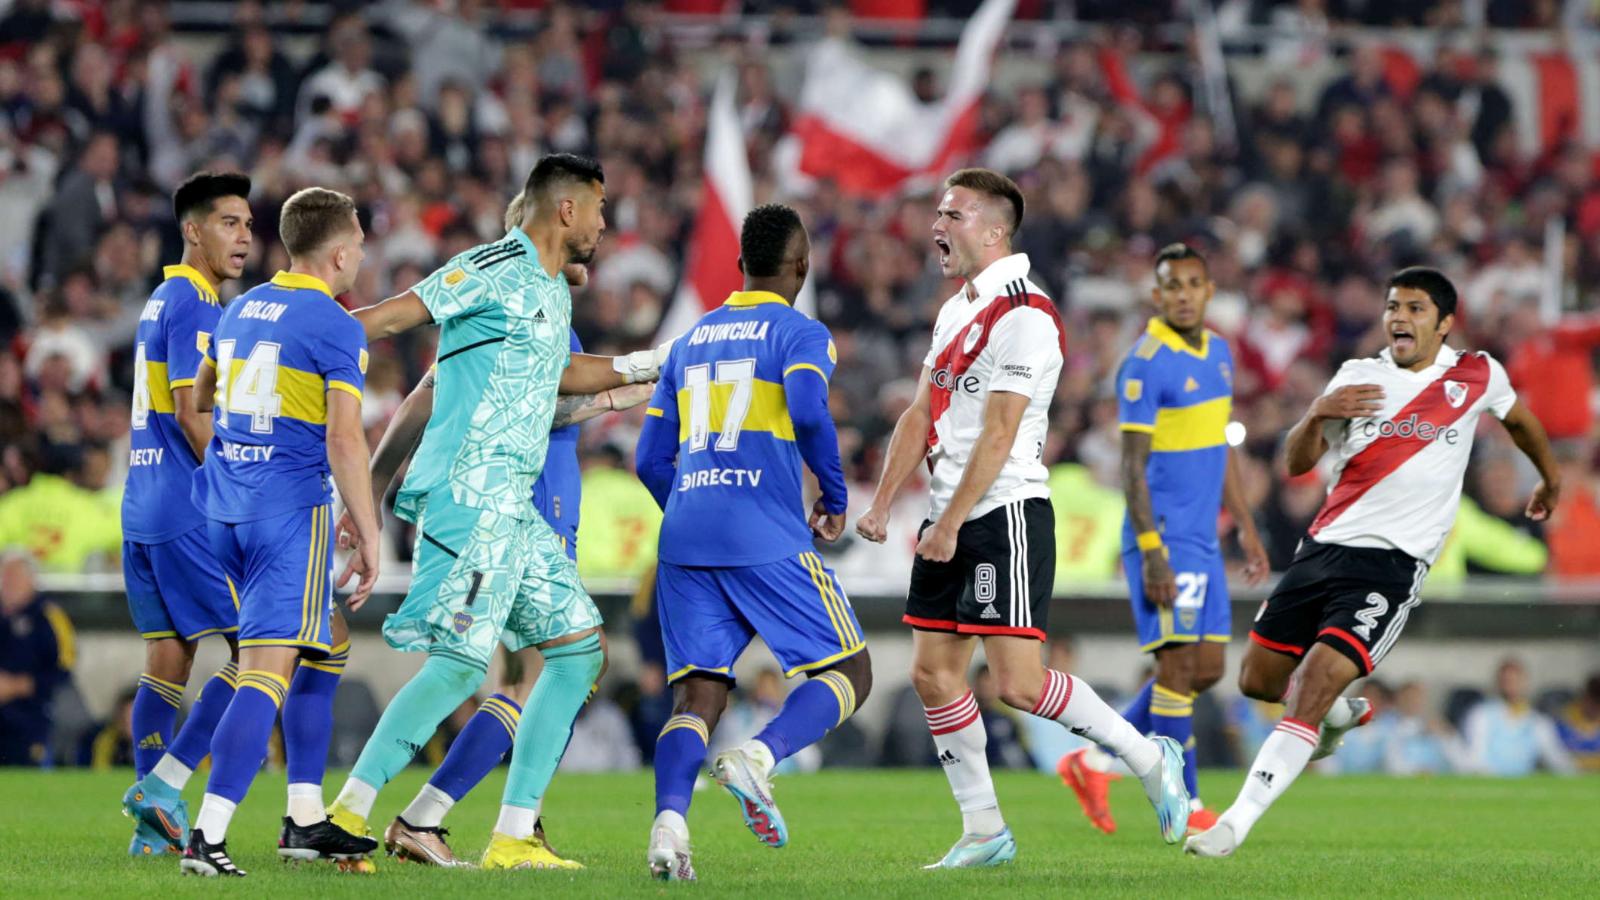 ¿Mereció ganar River Plate? Tensión en el superclásico ante Boca
Juniors